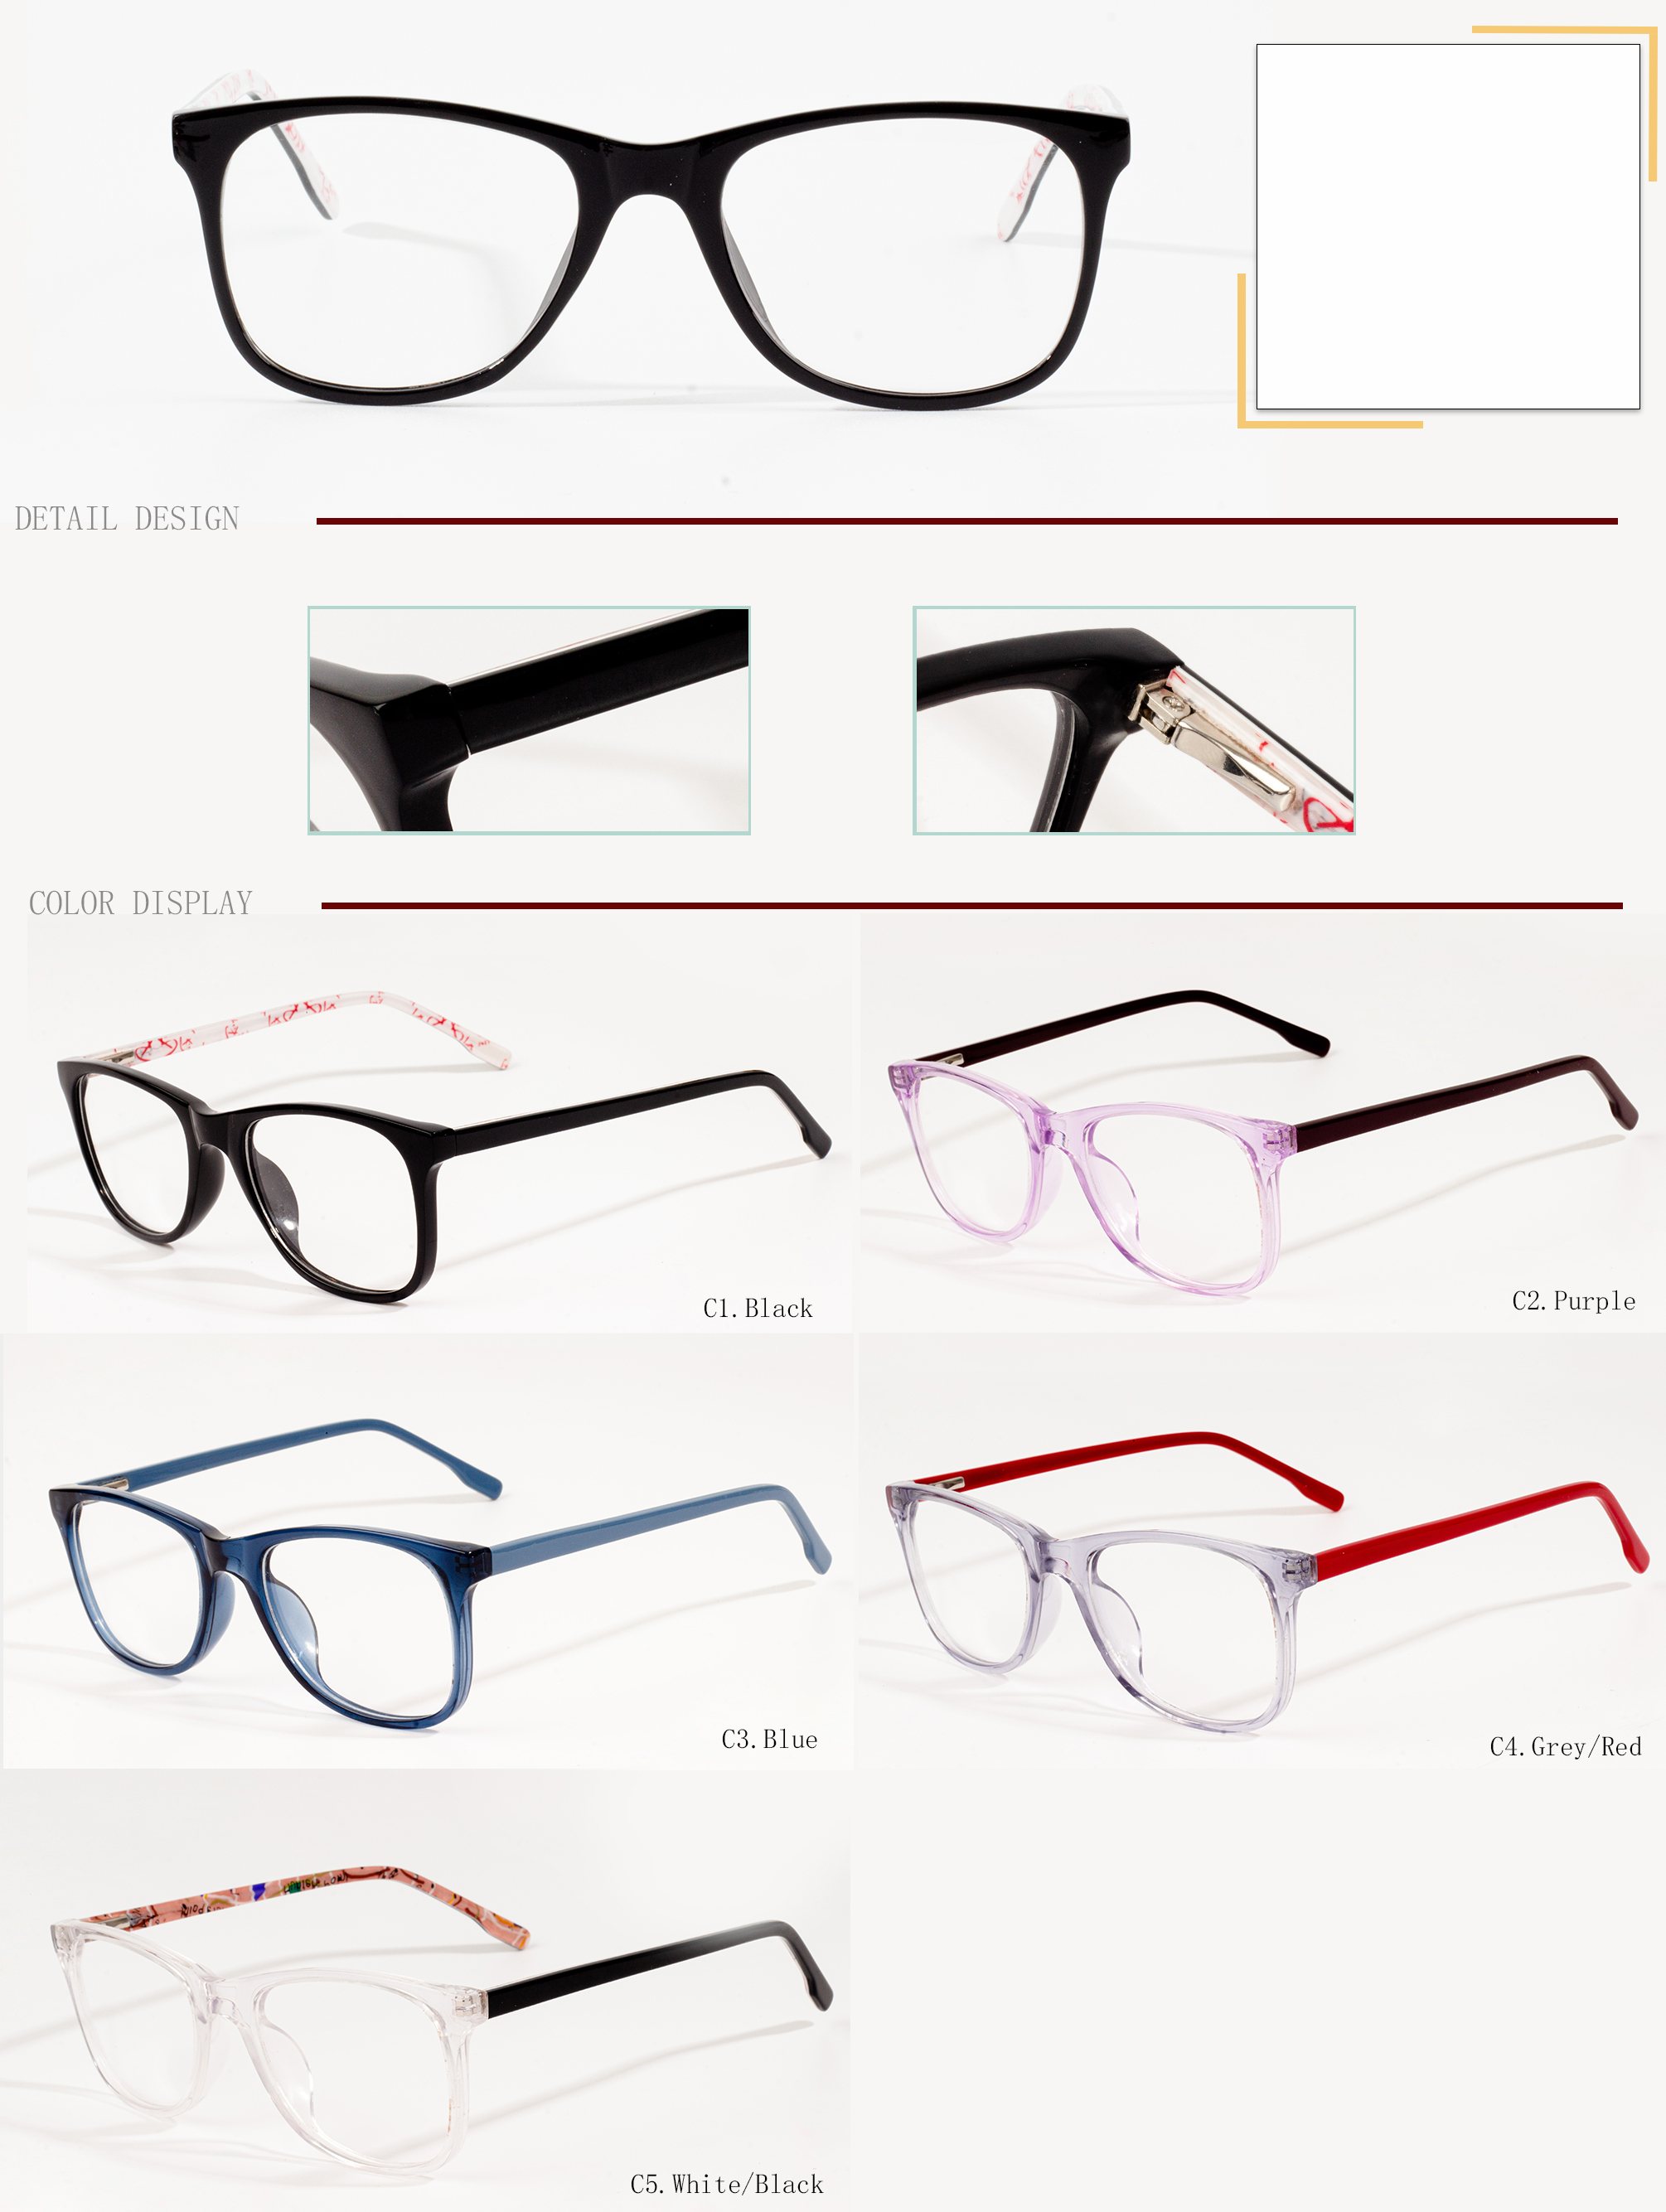 eyeglasses for kids